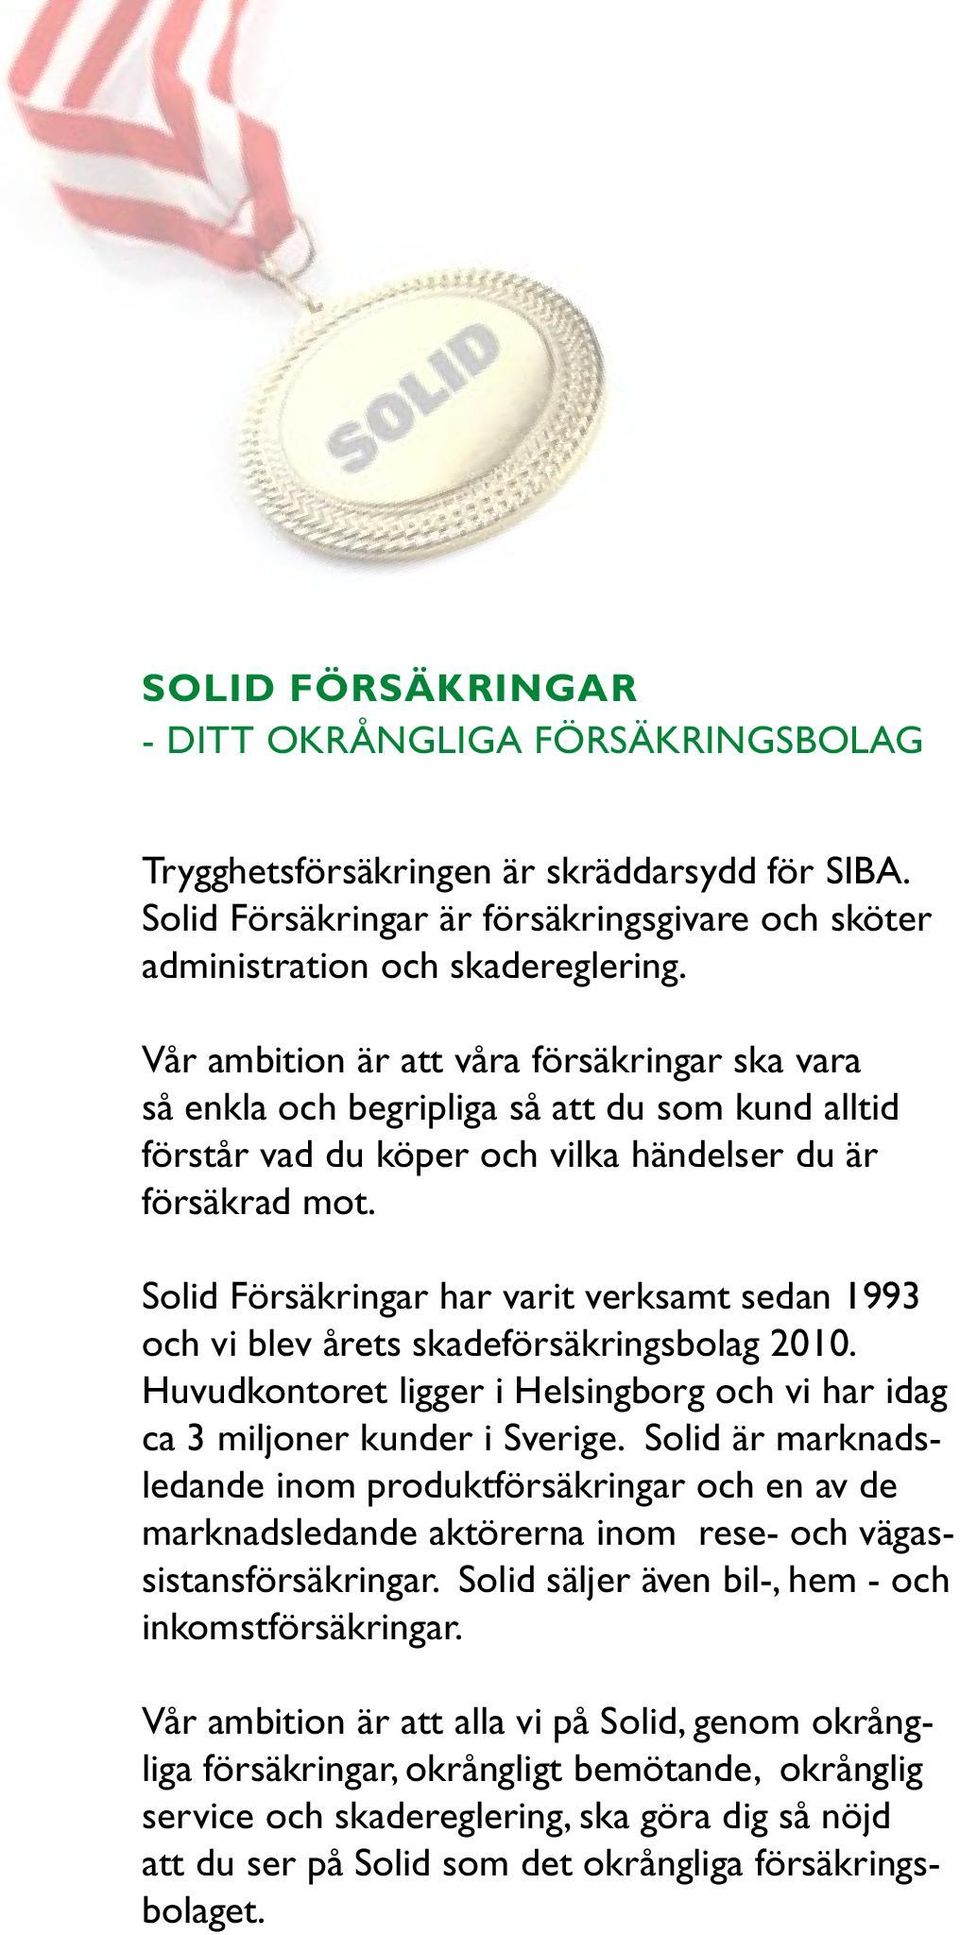 Solid Försäkringar har varit verksamt sedan 1993 och vi blev årets skadeförsäkringsbolag 2010. Huvudkontoret ligger i Helsingborg och vi har idag ca 3 miljoner kunder i Sverige.